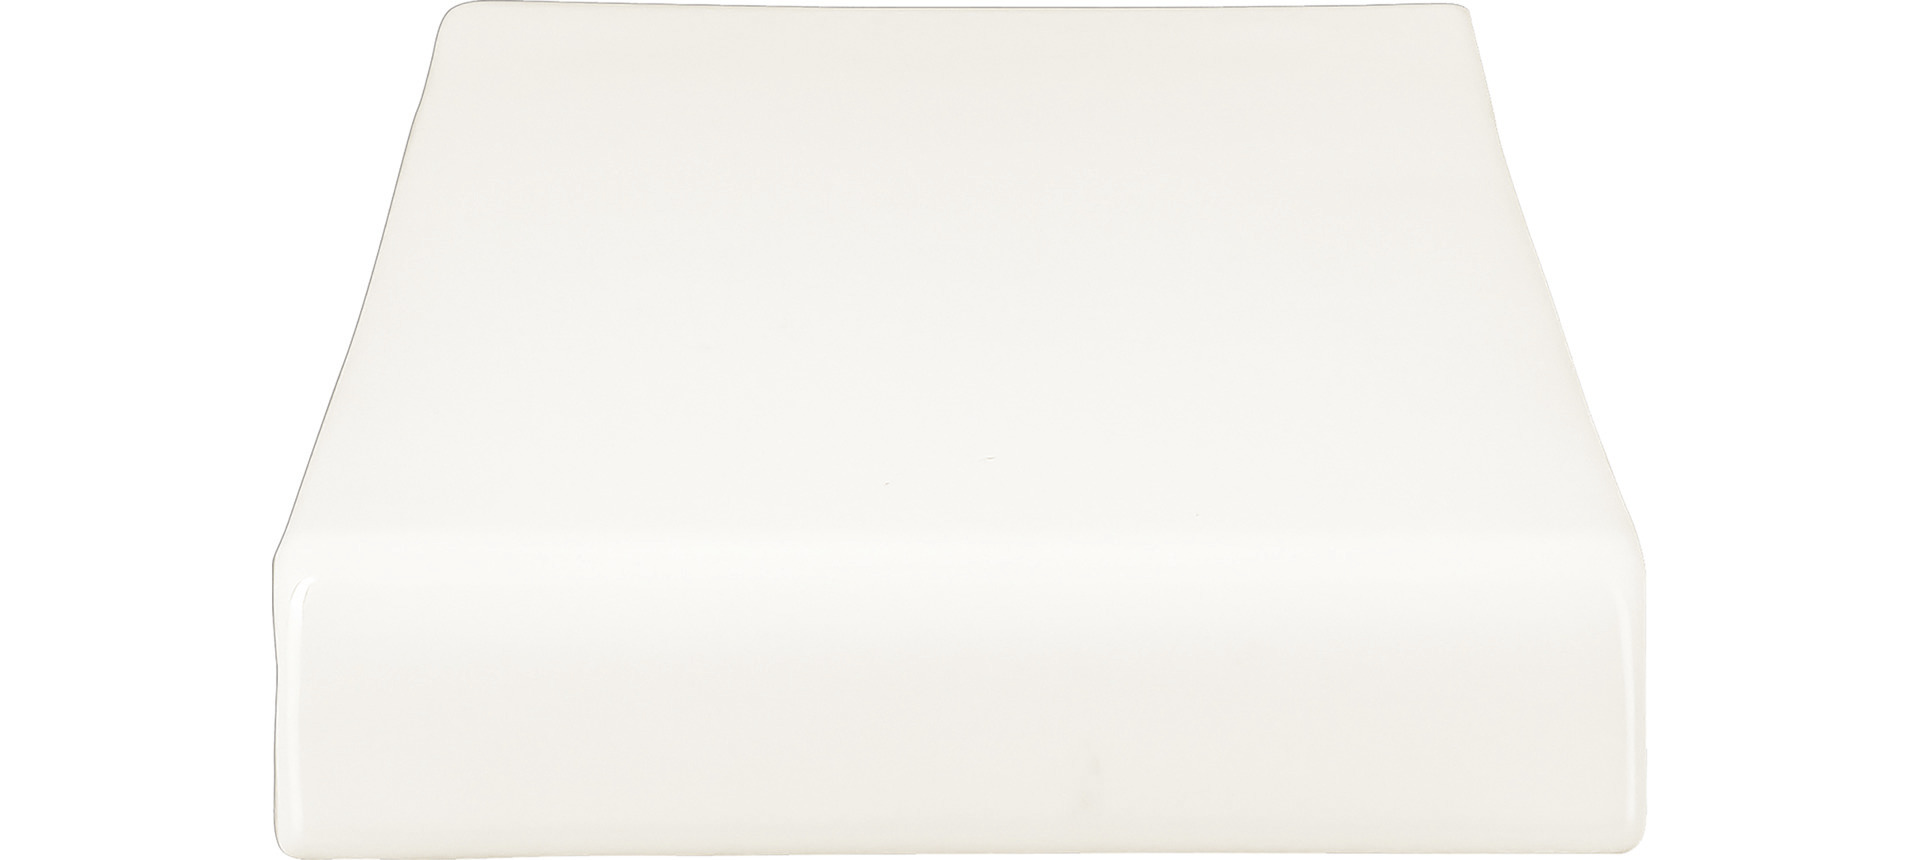 Platte rechteckig erhöht shared 320 x 150 mm plain-white